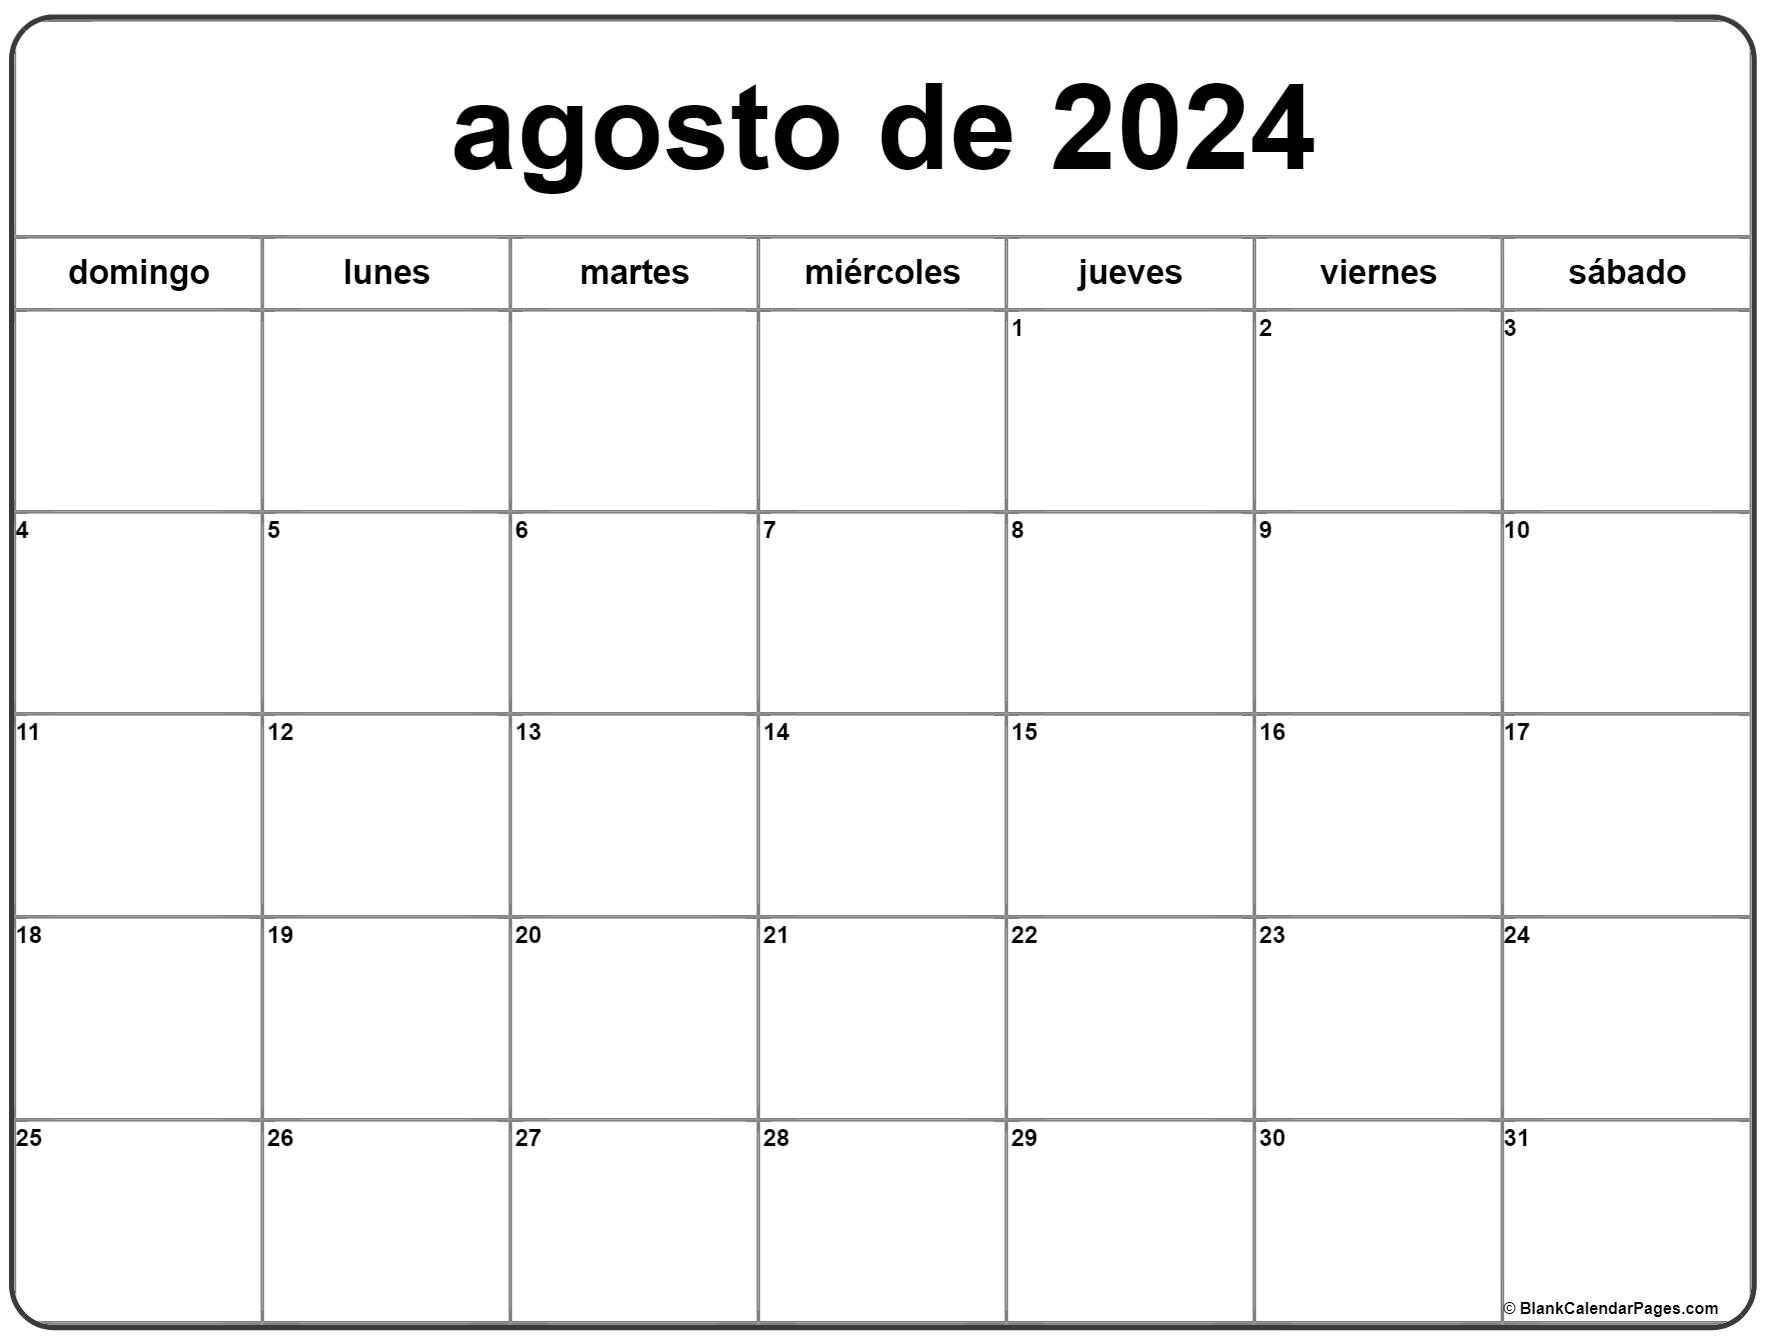 agosto de 2024 calendario gratis | Calendario agosto